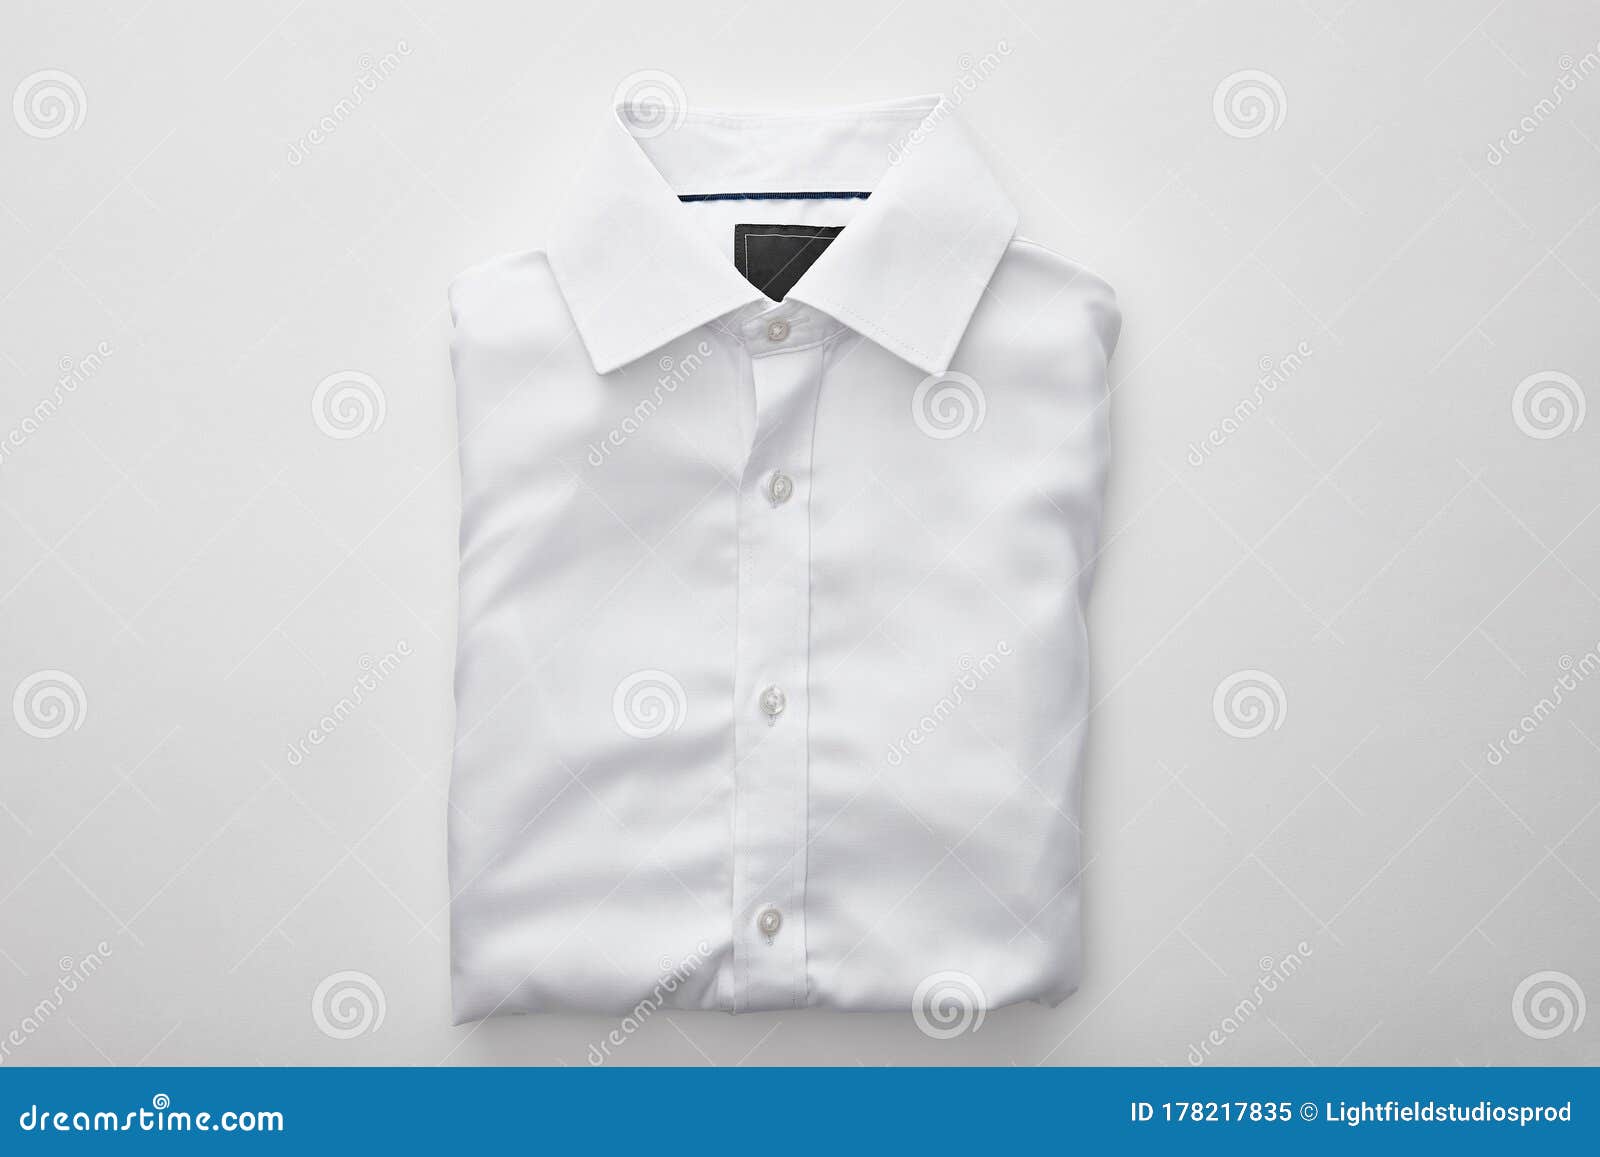 View of Plain Folded Shirt on Stock Image - Image of style, clothing ...